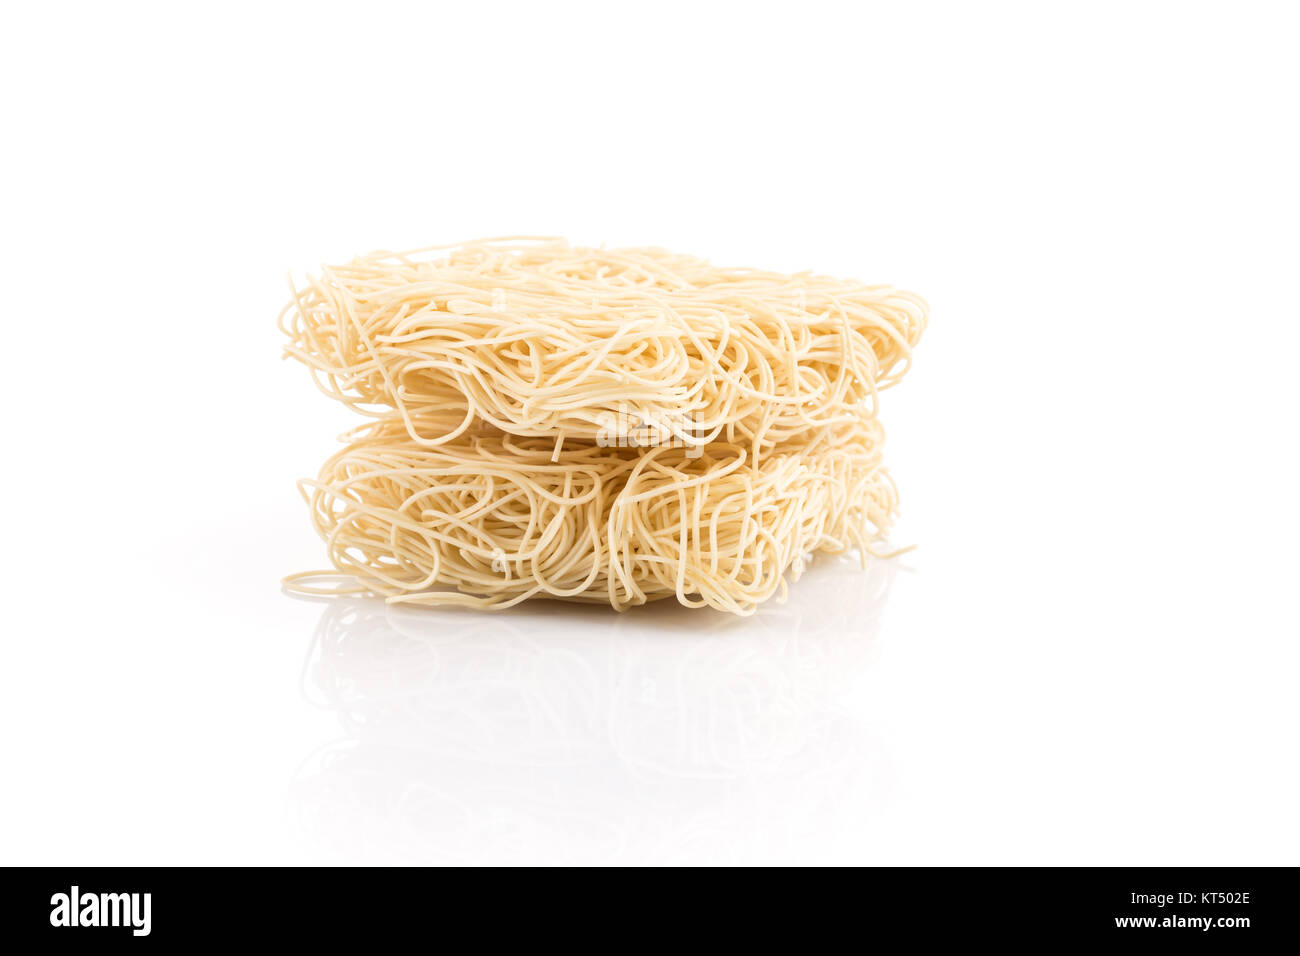 asian ramen instant noodles Stock Photo